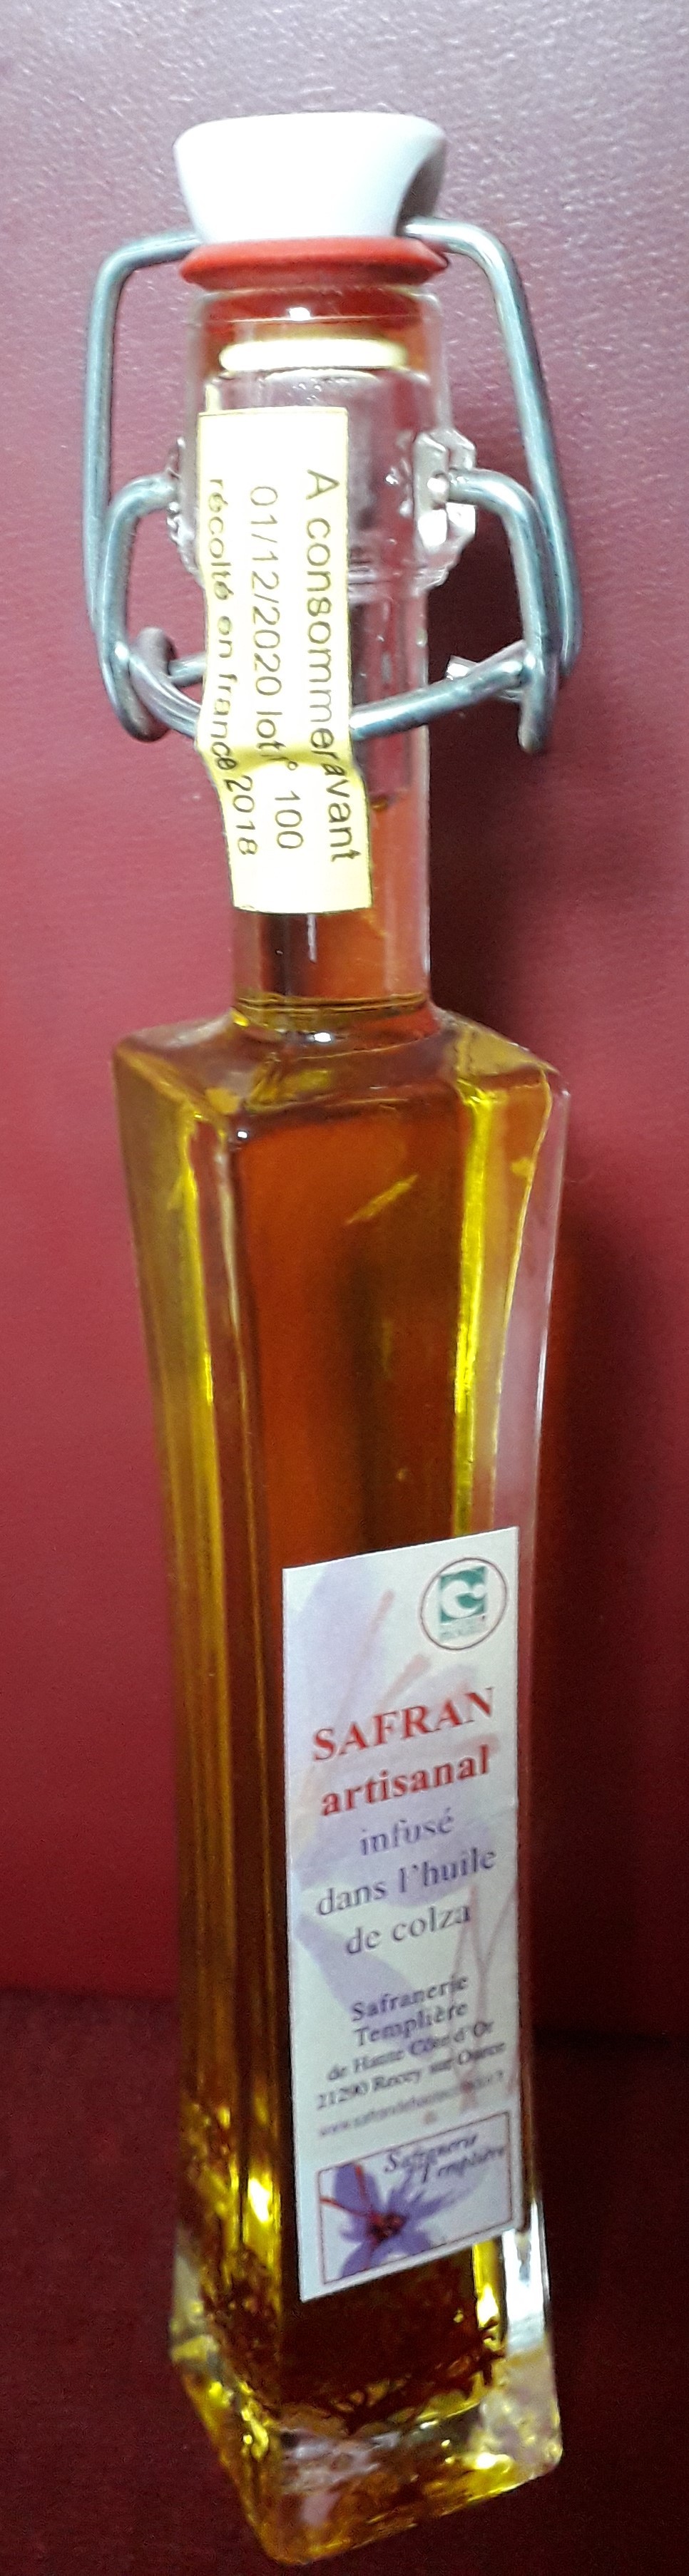 safran infusé dans l'huile de colza